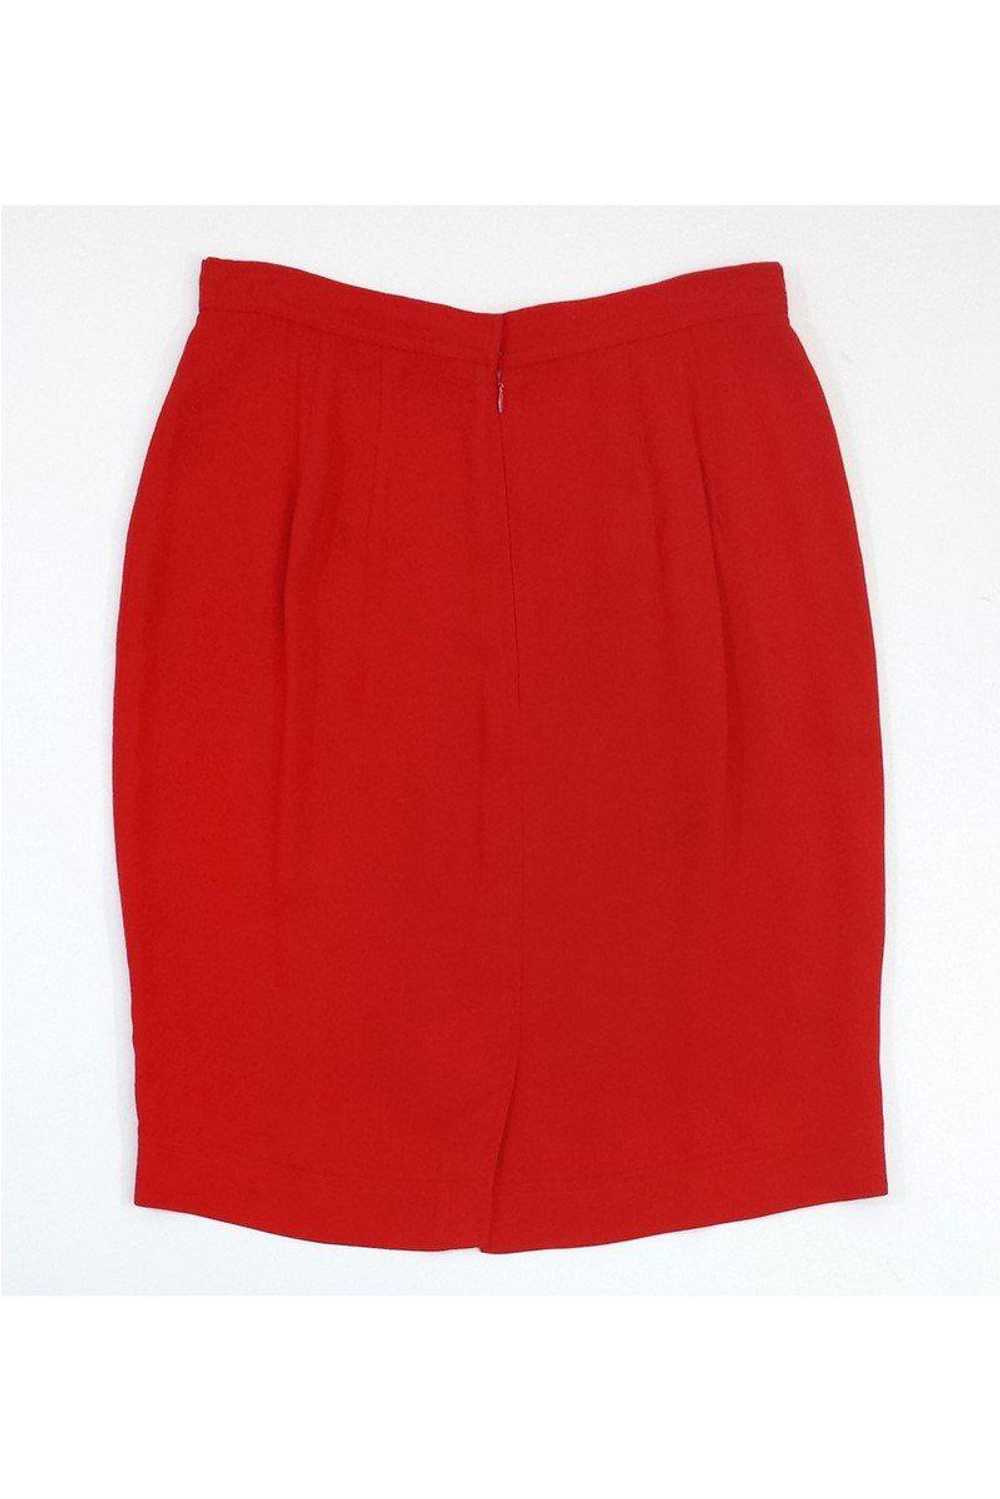 Donna Karan - Red Pencil Skirt Sz 12 - image 2